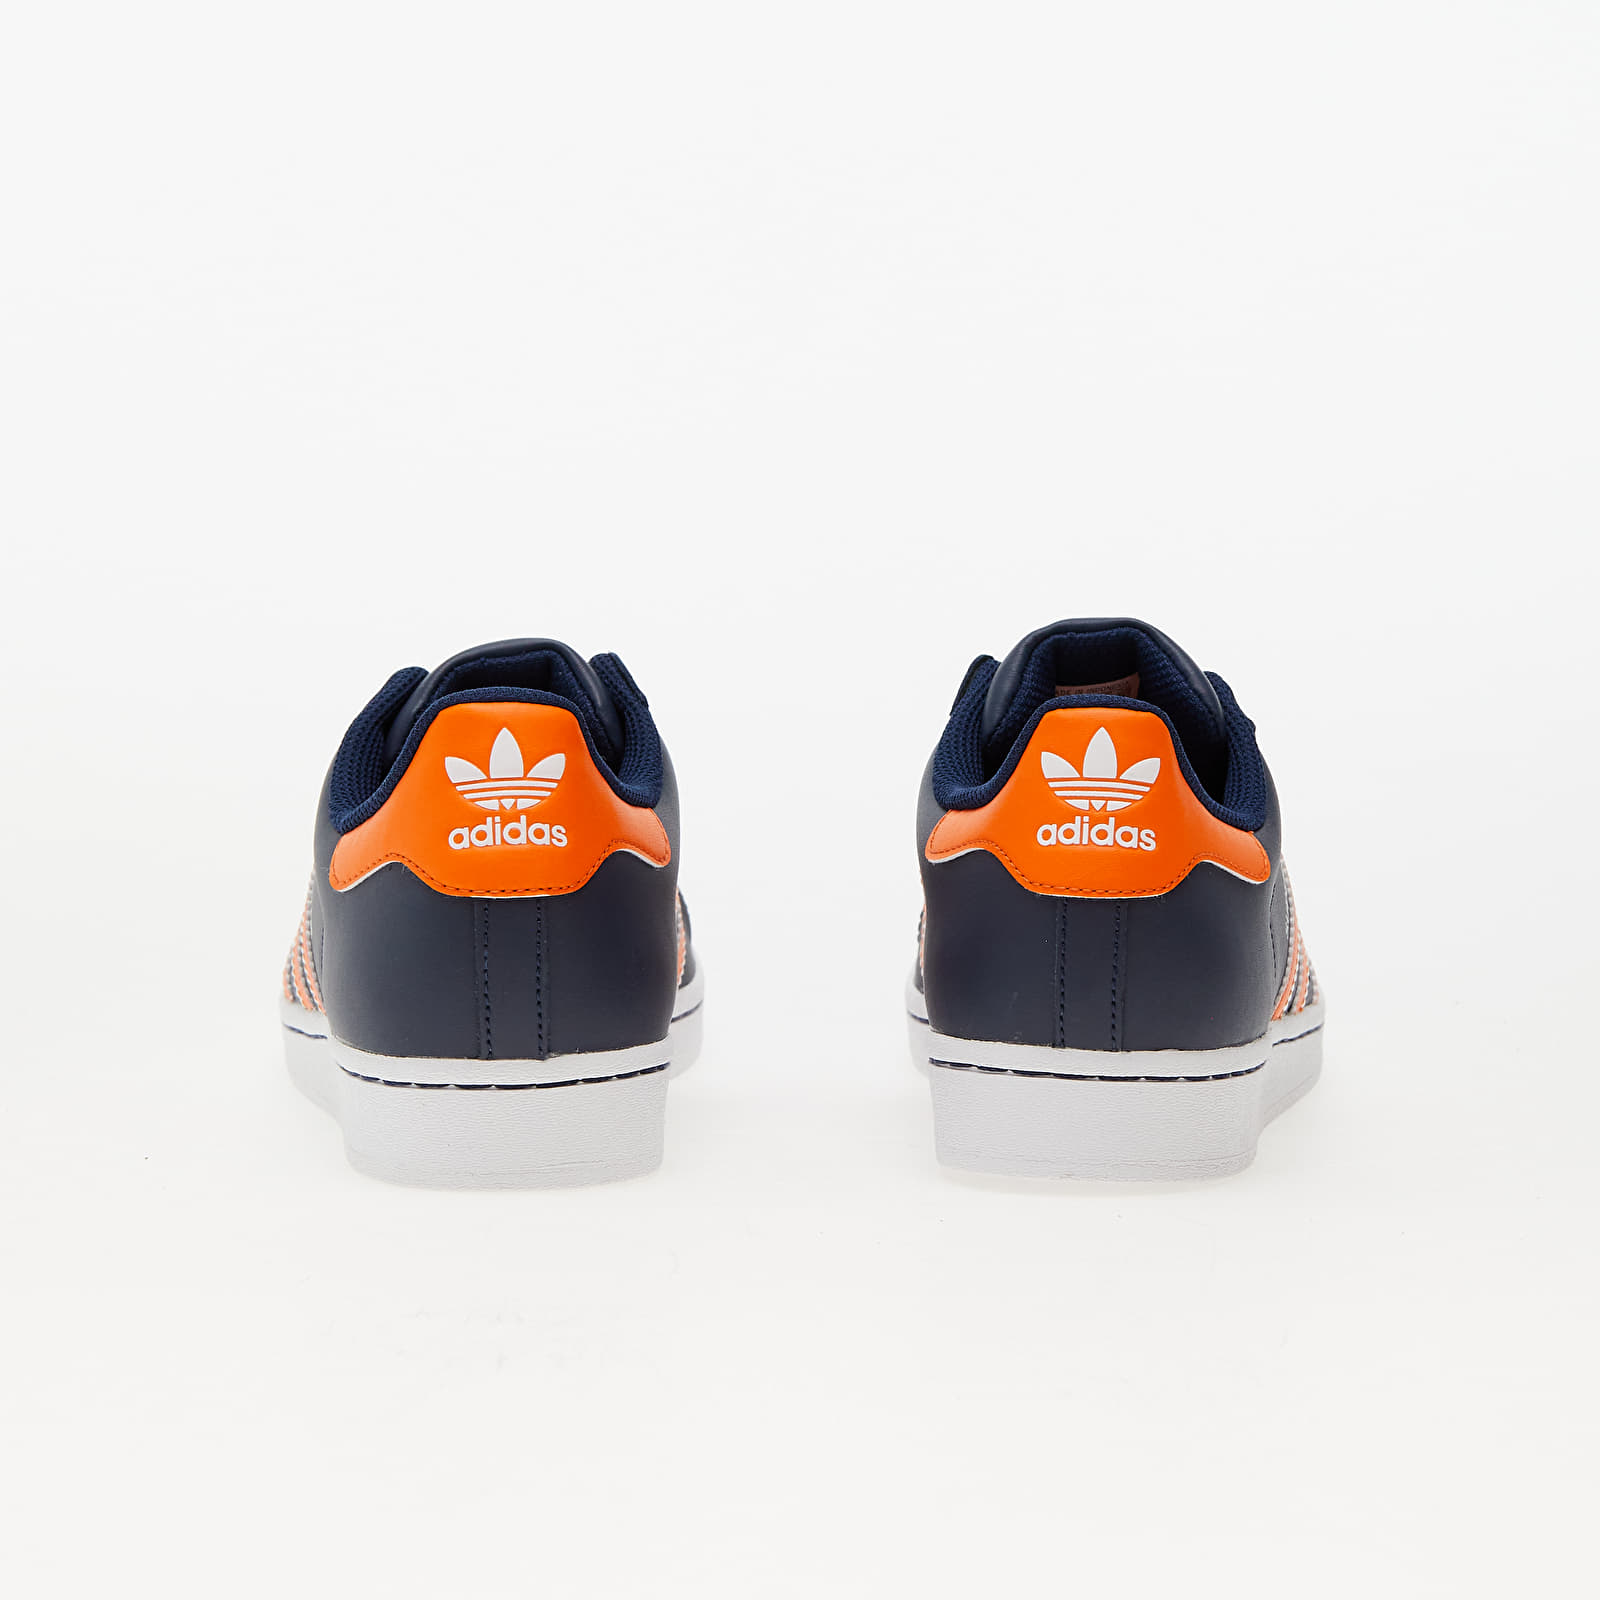 Men's shoes adidas Superstar Night Indigo/ Orange/ Ftw White | Footshop